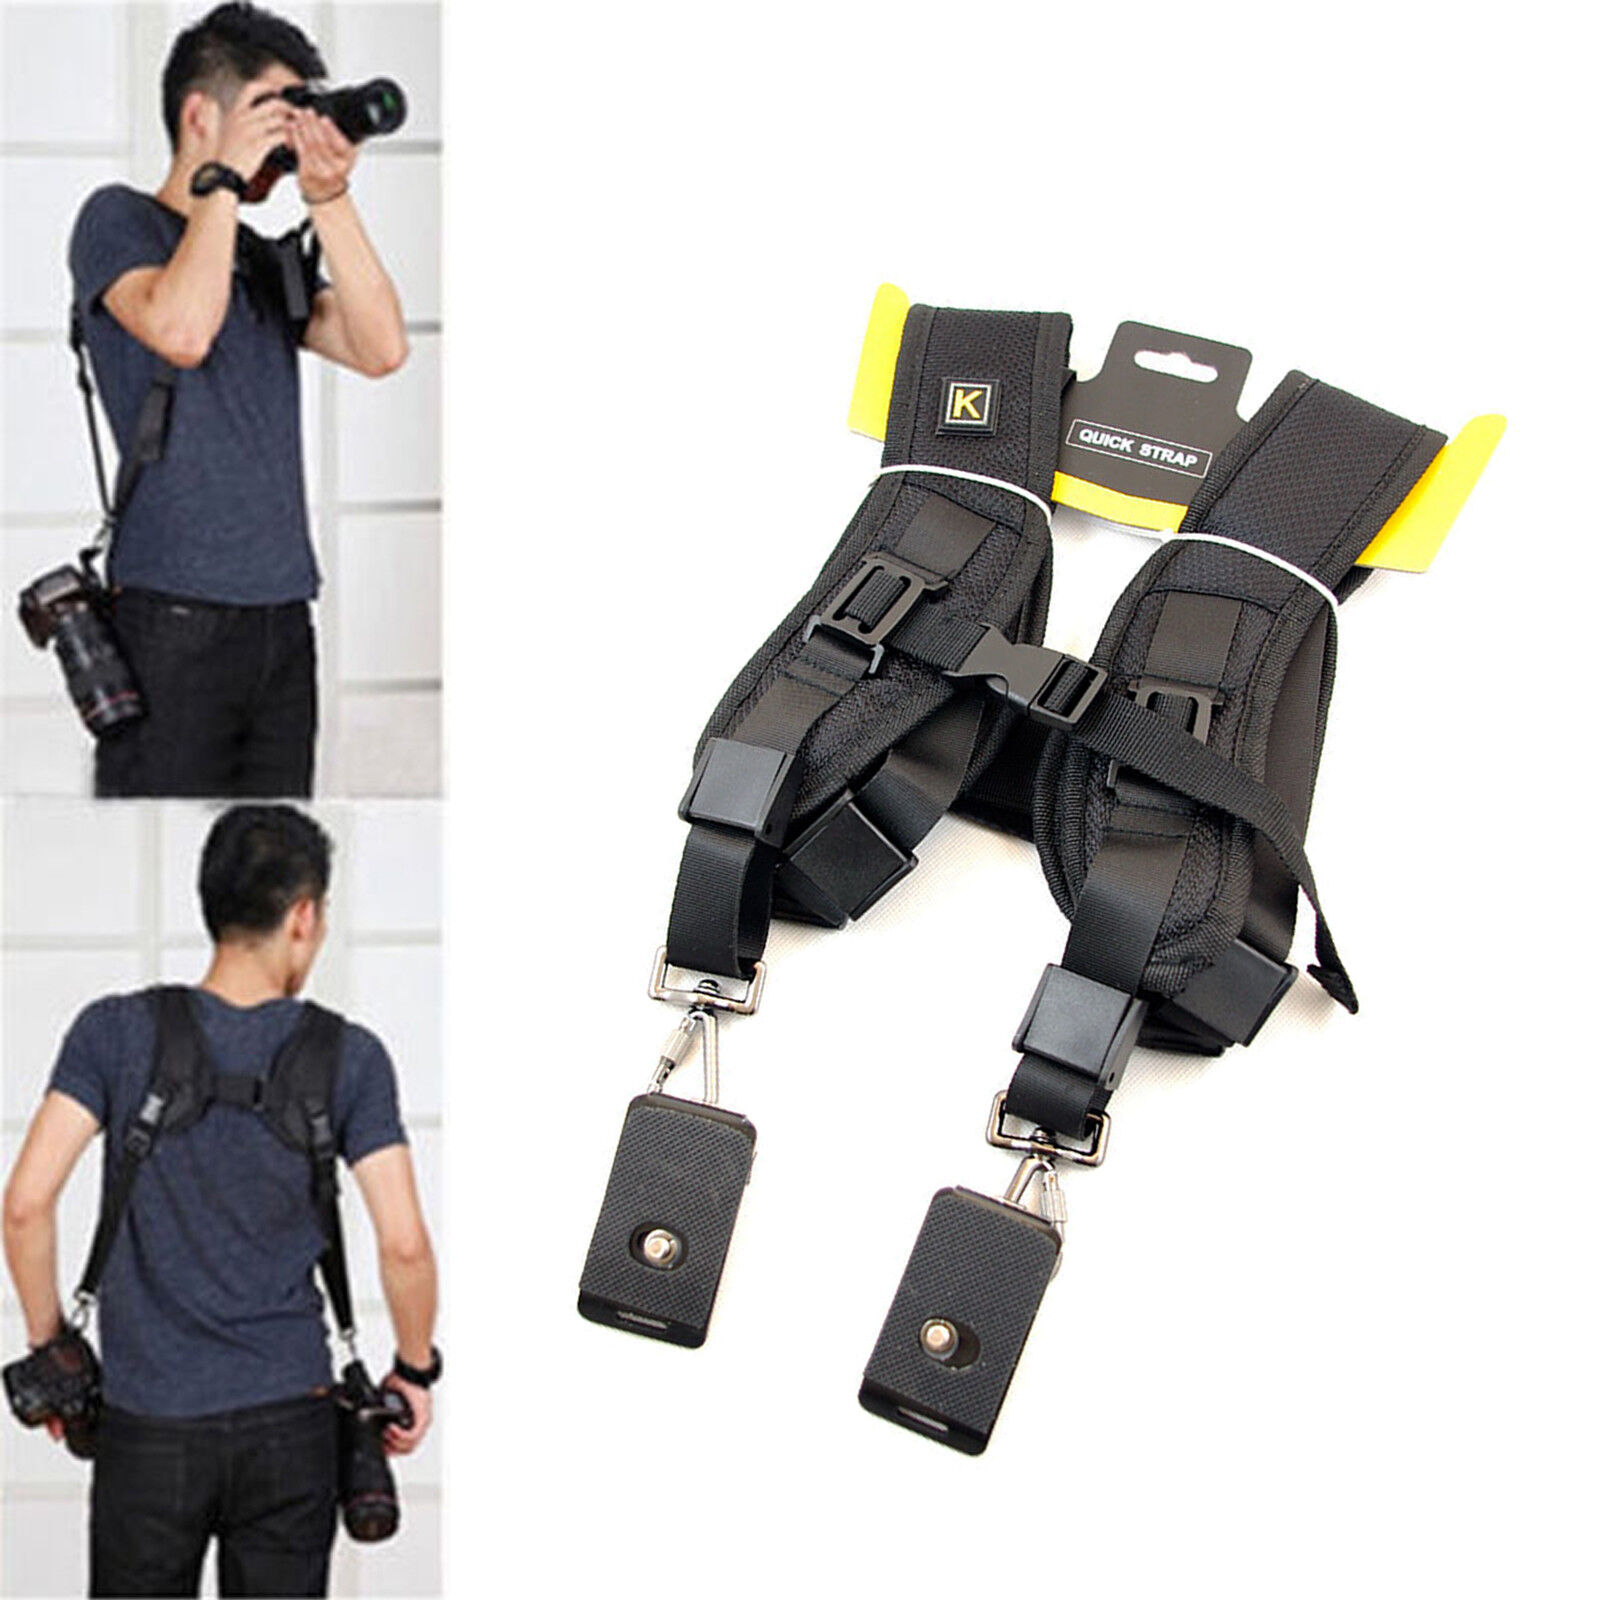 Black Dual Shoulder Quick Release Belt Sling Strap For 2 DSLR Camera Canon Nikon